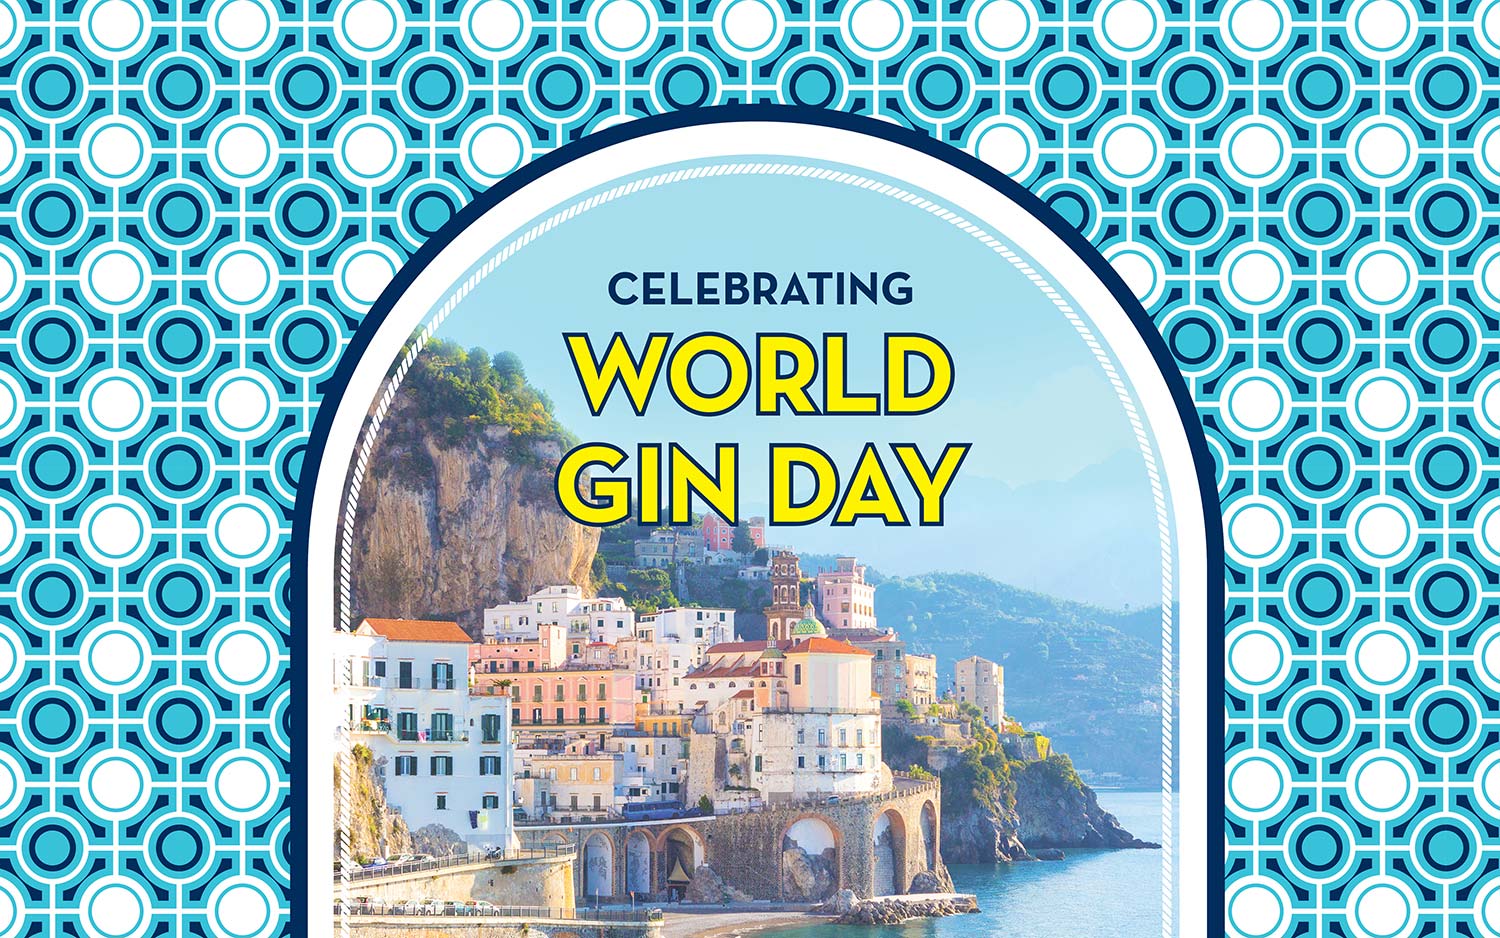 Malfy Gin – Celebrating World Gin Day